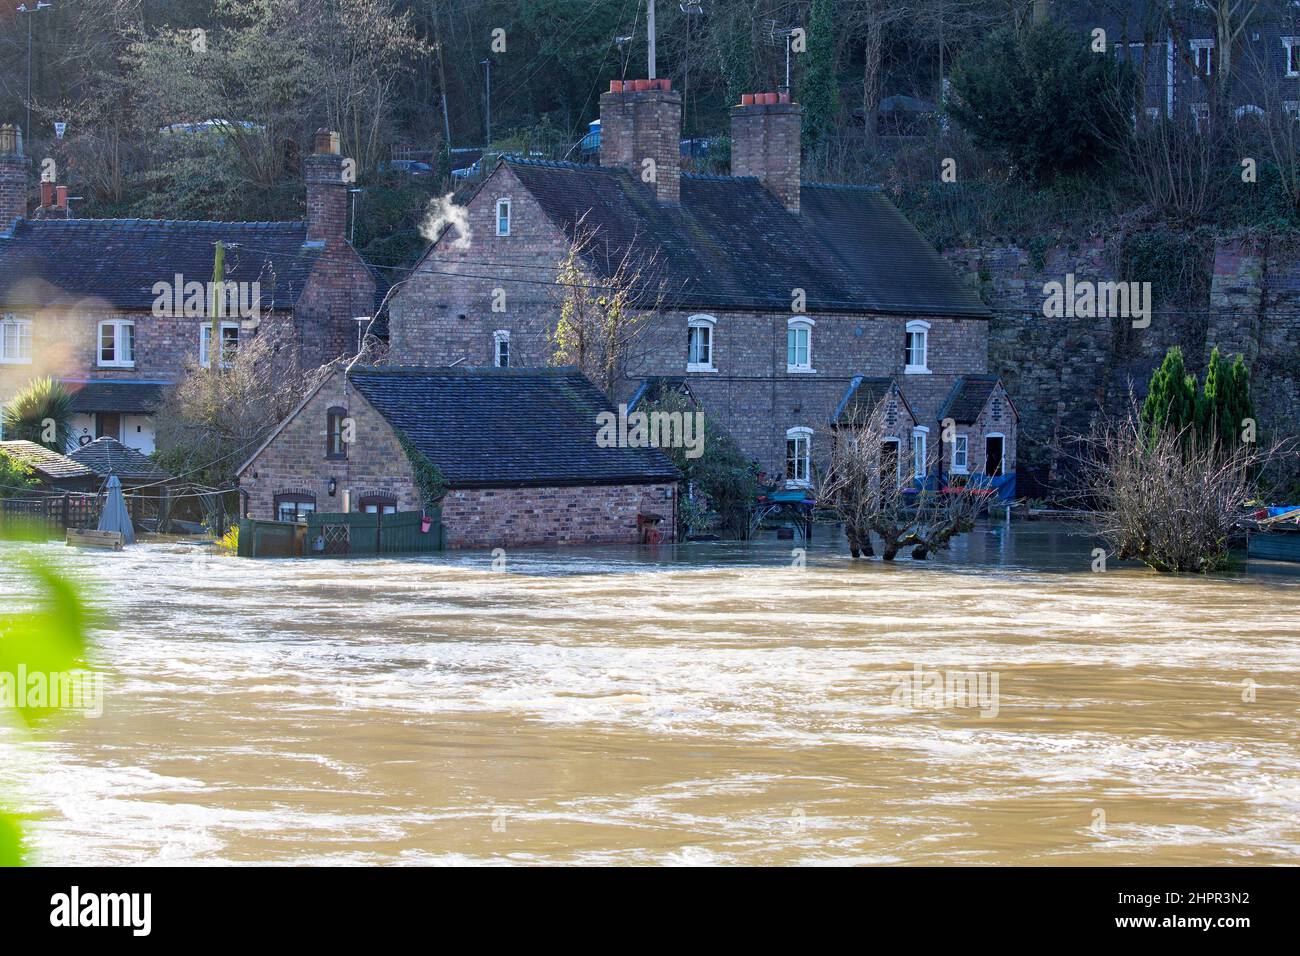 Shropshire, England. 23/02/2022, Grundstücke am Ufer des Flusses Severn im Weltnaturerbe Ironbridge Gorge in Shropshire, England, bleiben überflutet, da der Flussspiegel nach einer Woche von Überschwemmungen weiterhin hoch bleibt. Stockfoto